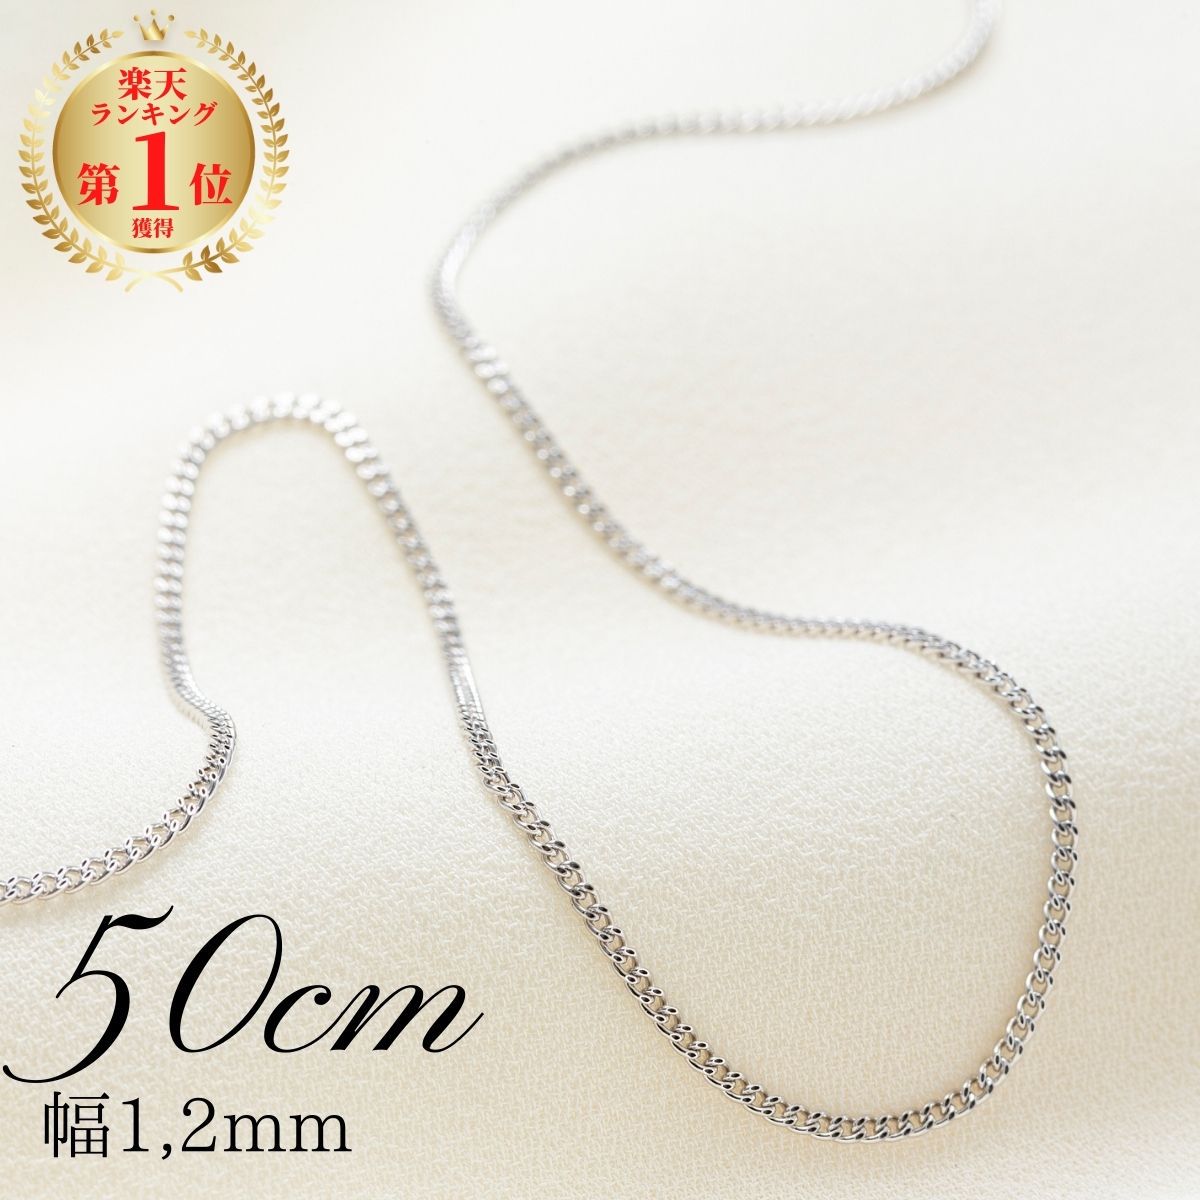 当店の記念日 《最高品質 日本製18金》喜平ネックレスチェーン 50cm 2g